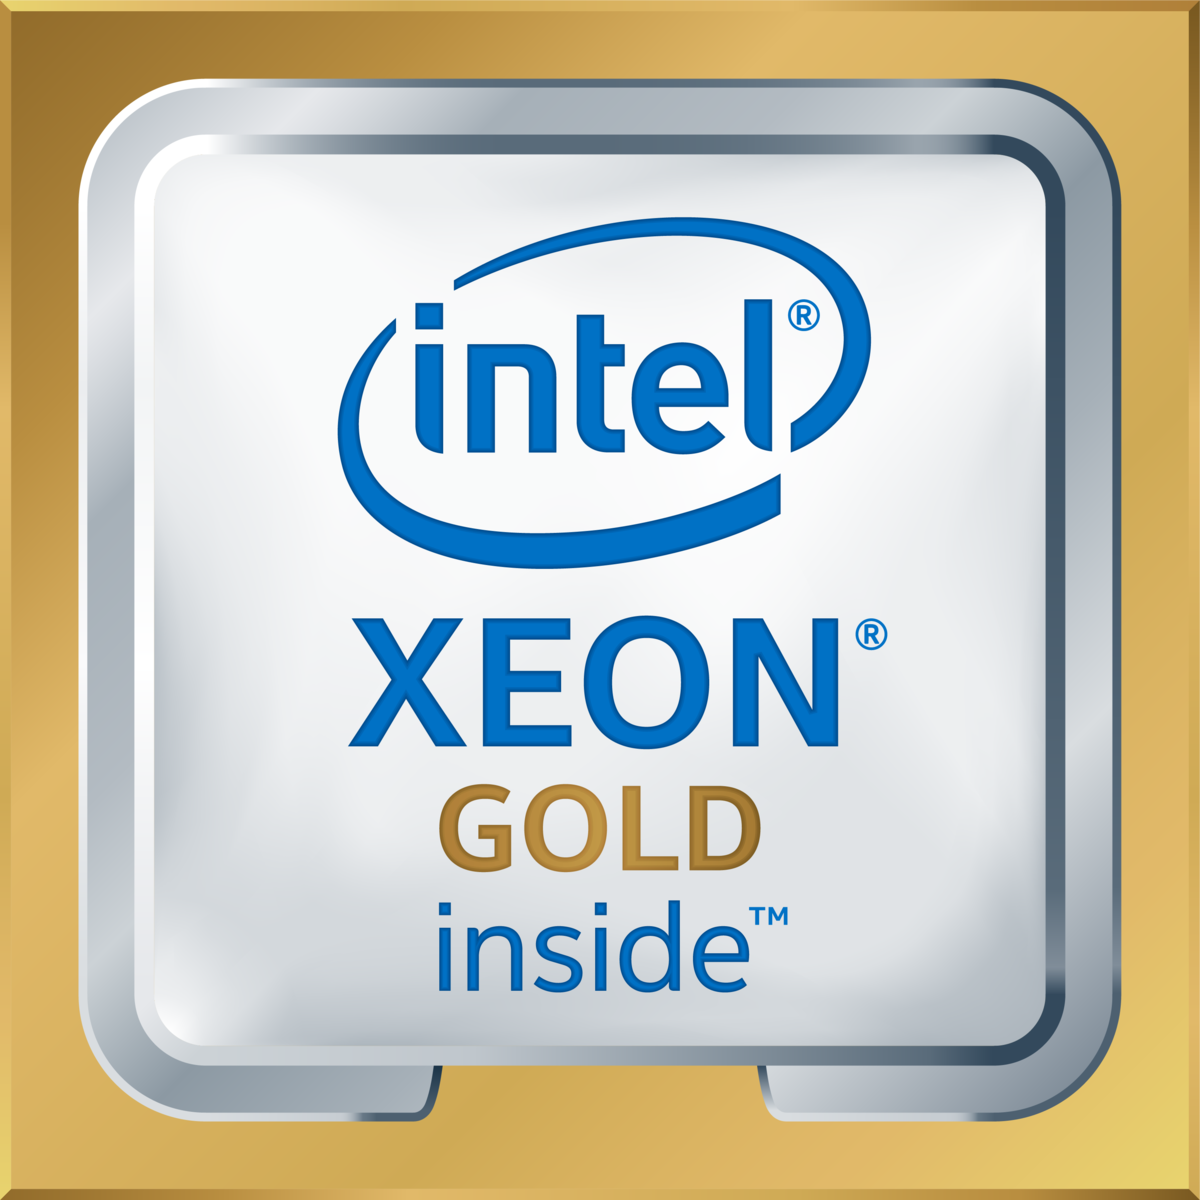 Intel(R) Xeon(R) Gold 6136 CPU @ 3.00GHz's logo